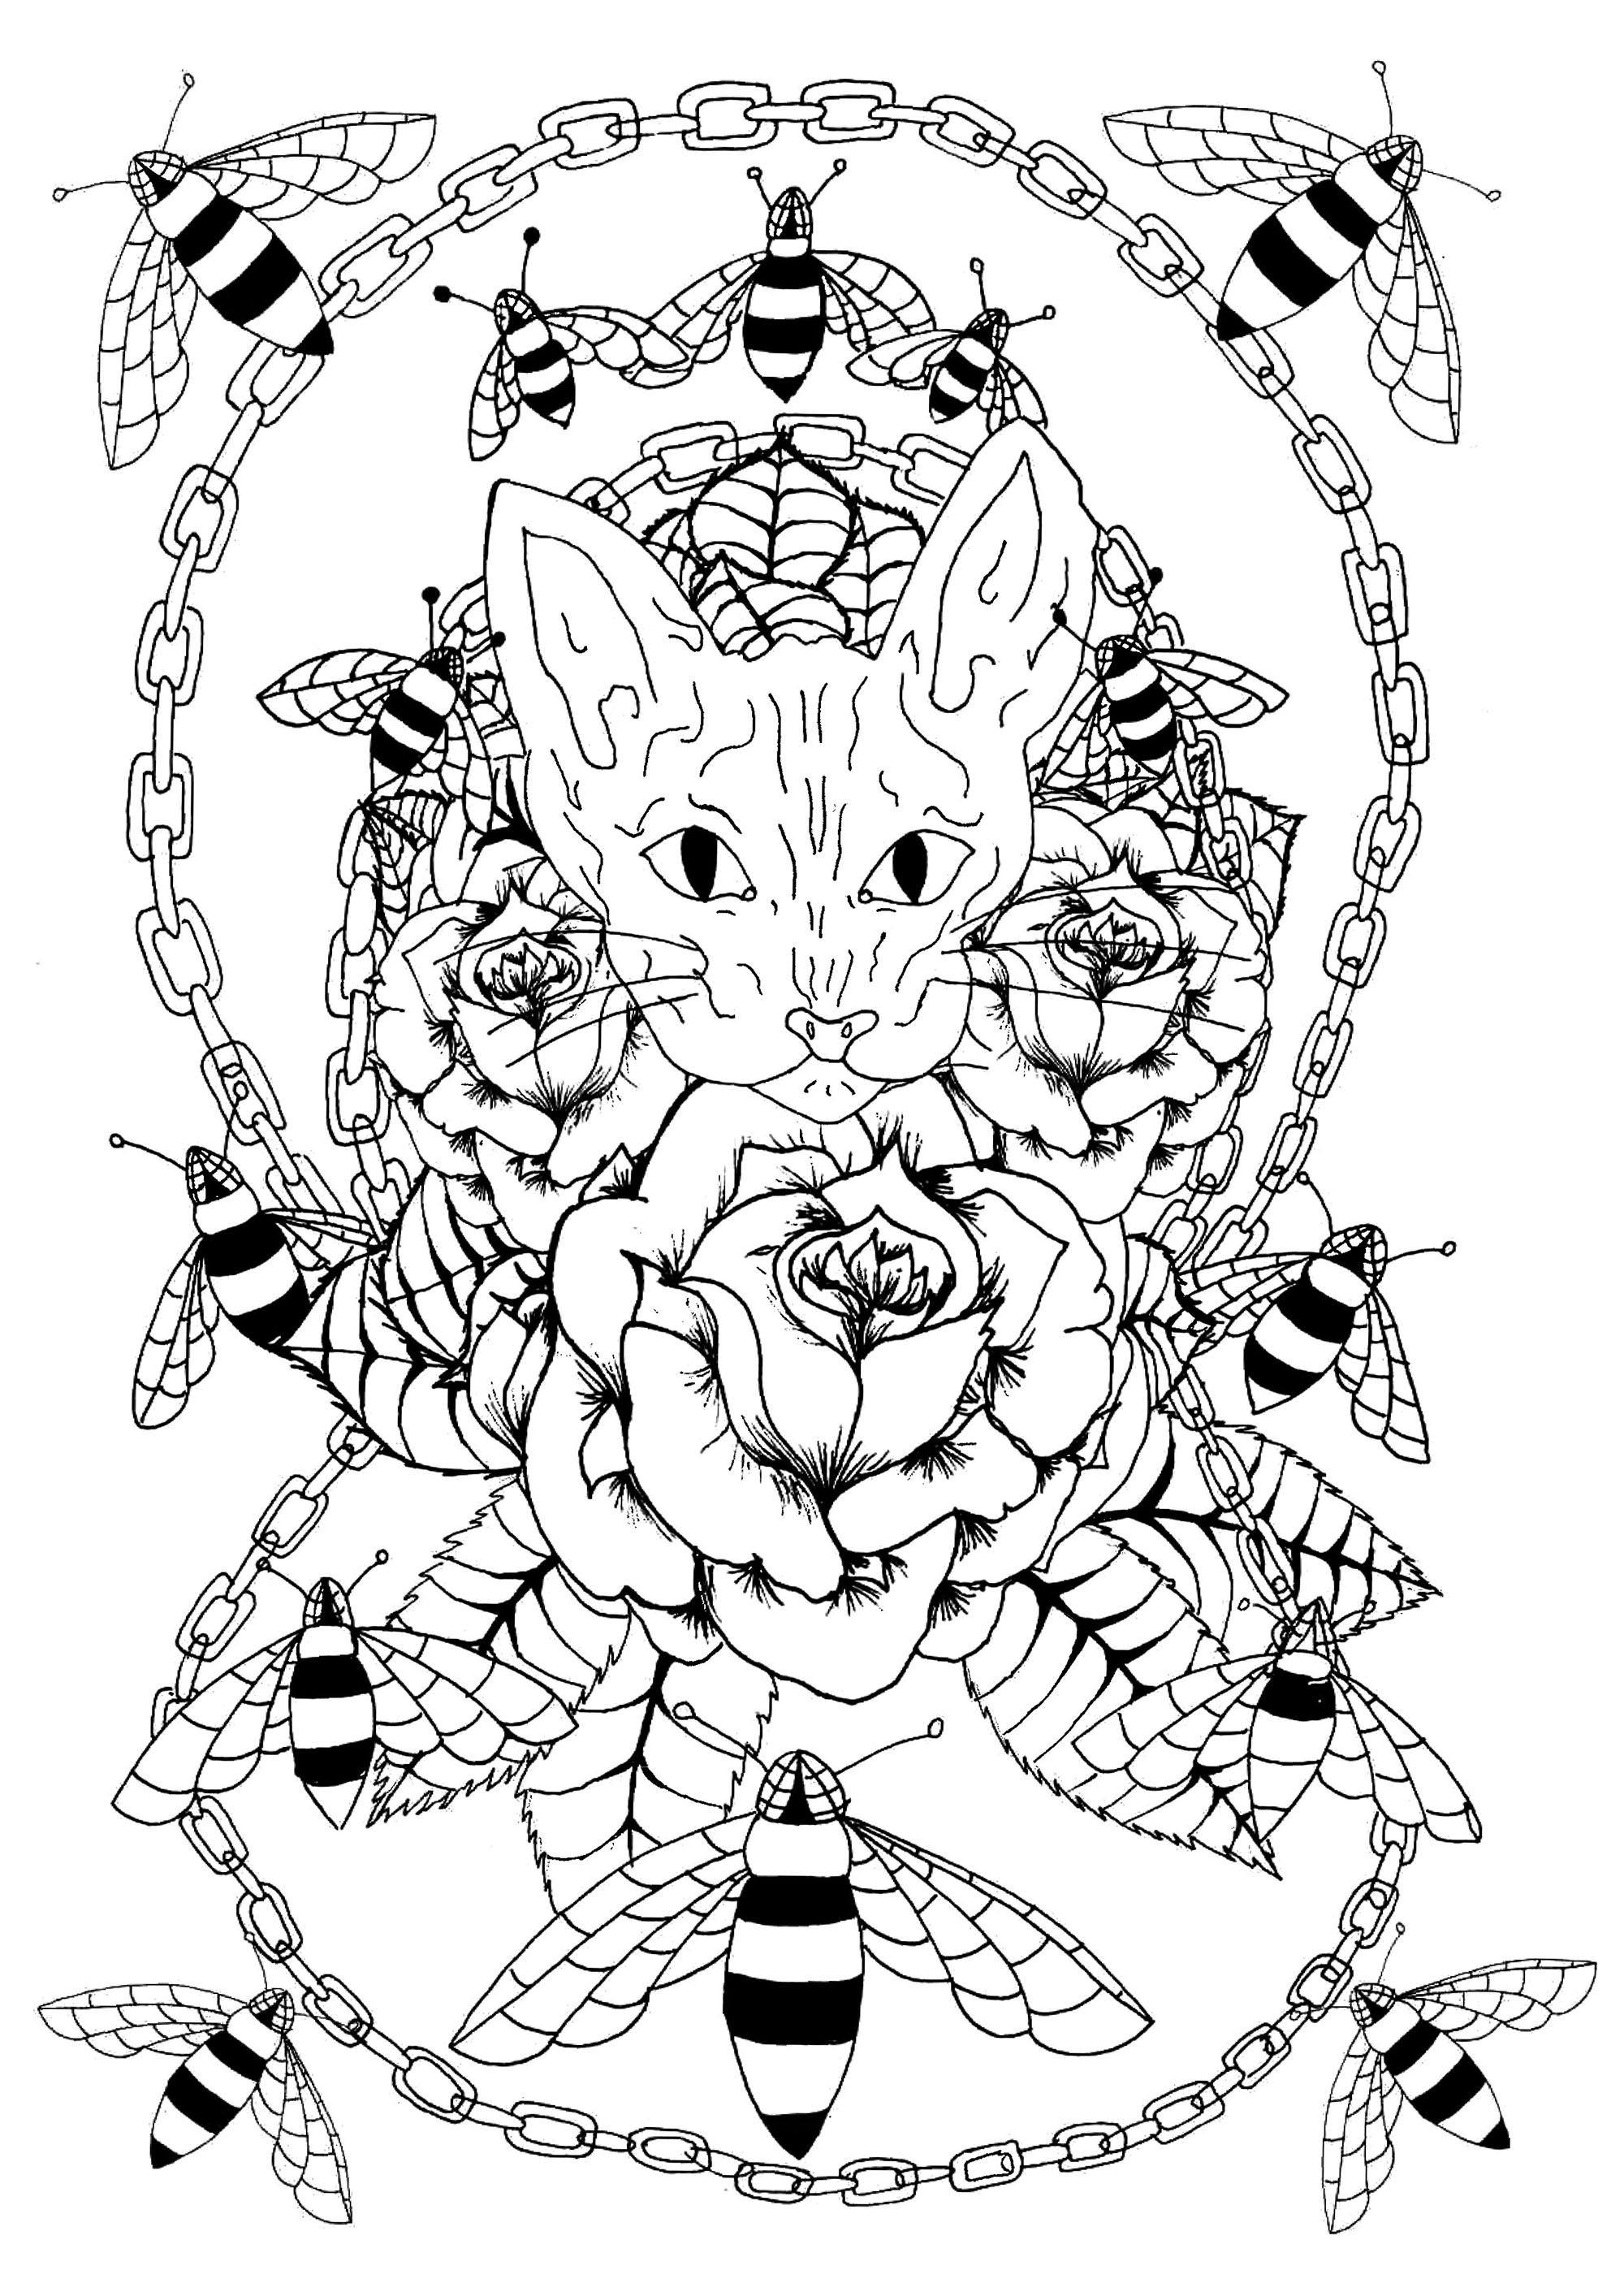 Tête de chat sphynx entourée de roses, d'abeilles et d'une chaîne métallique, Artiste : Lise